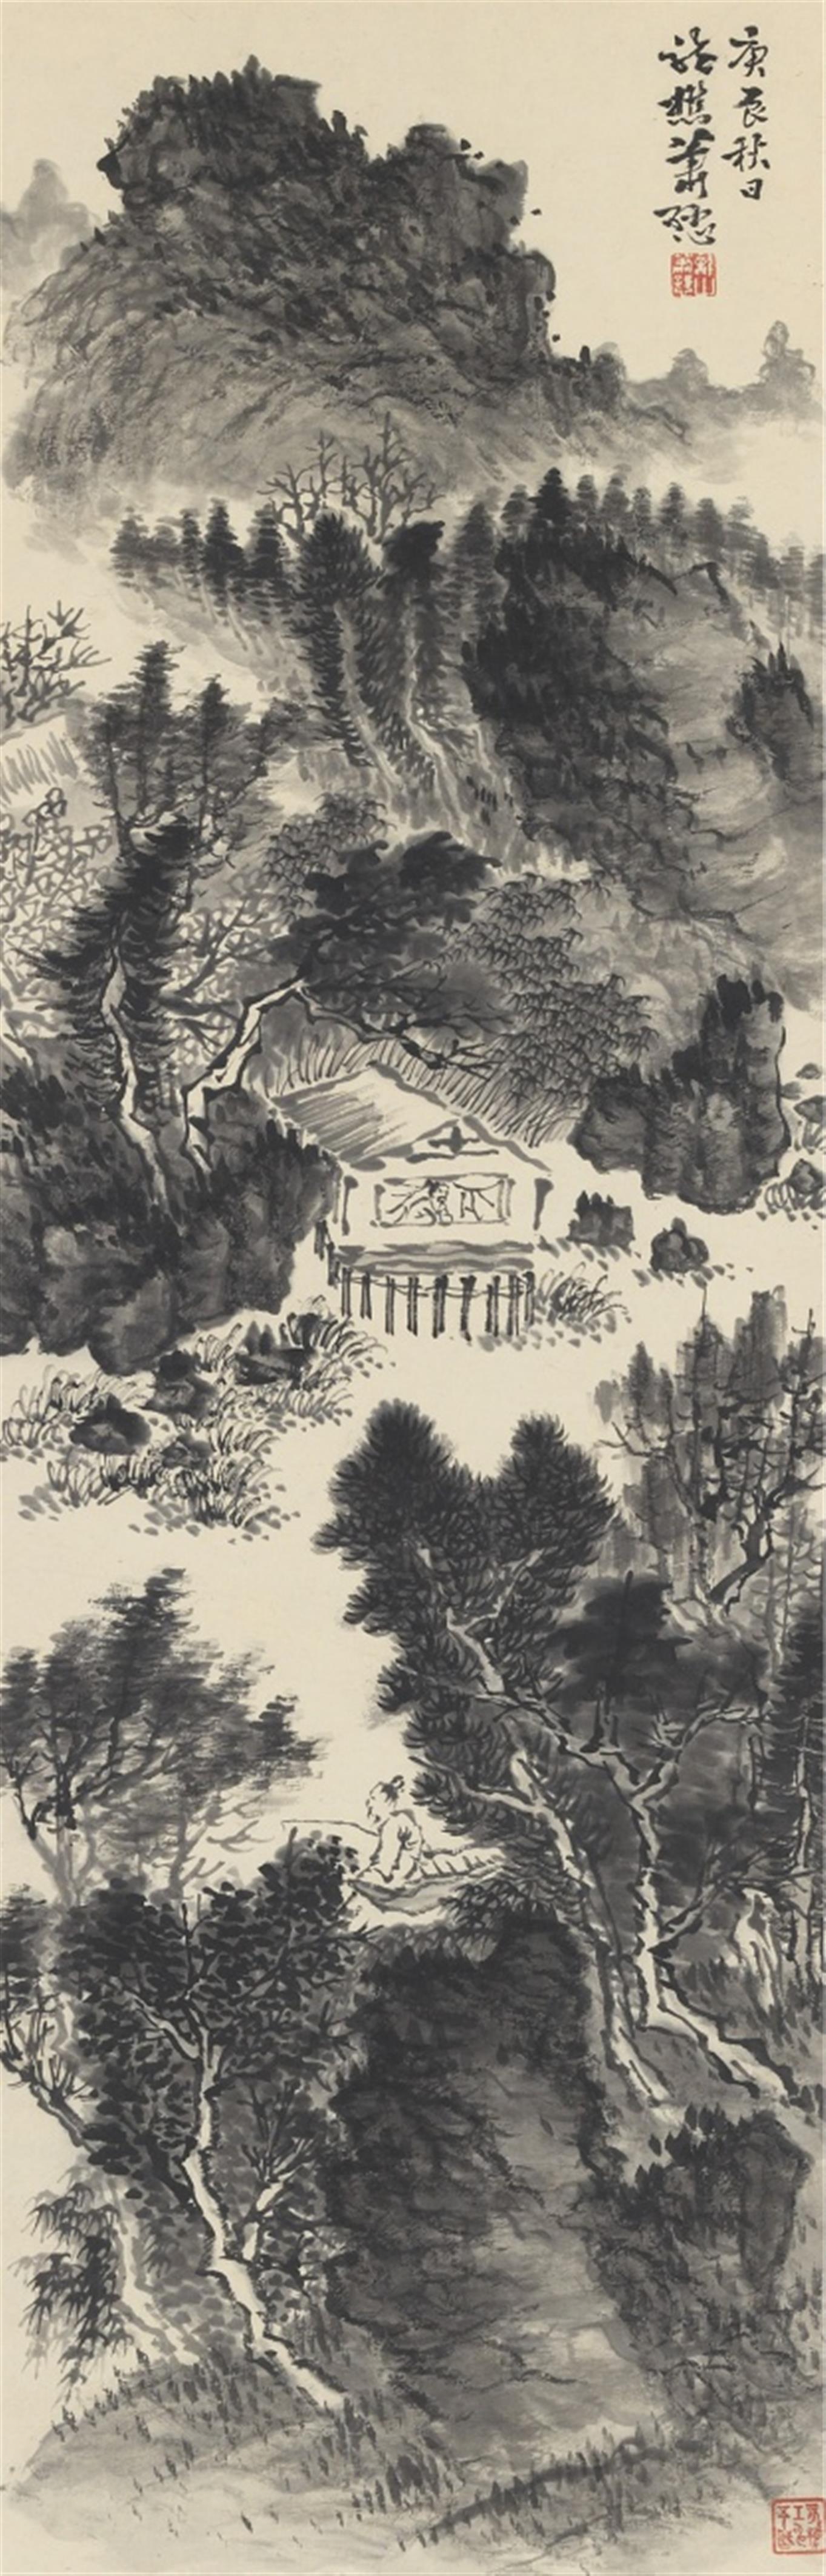 Xiao Sun - Landschaft mit Hütte und Angler. Hängerolle. Tusche auf Papier. Aufschrift, zyklisch datiert gengchen (1940), sign.: Xiao Sun und Siegel: Longshan Xiao Sun und ein weiteres. - image-1